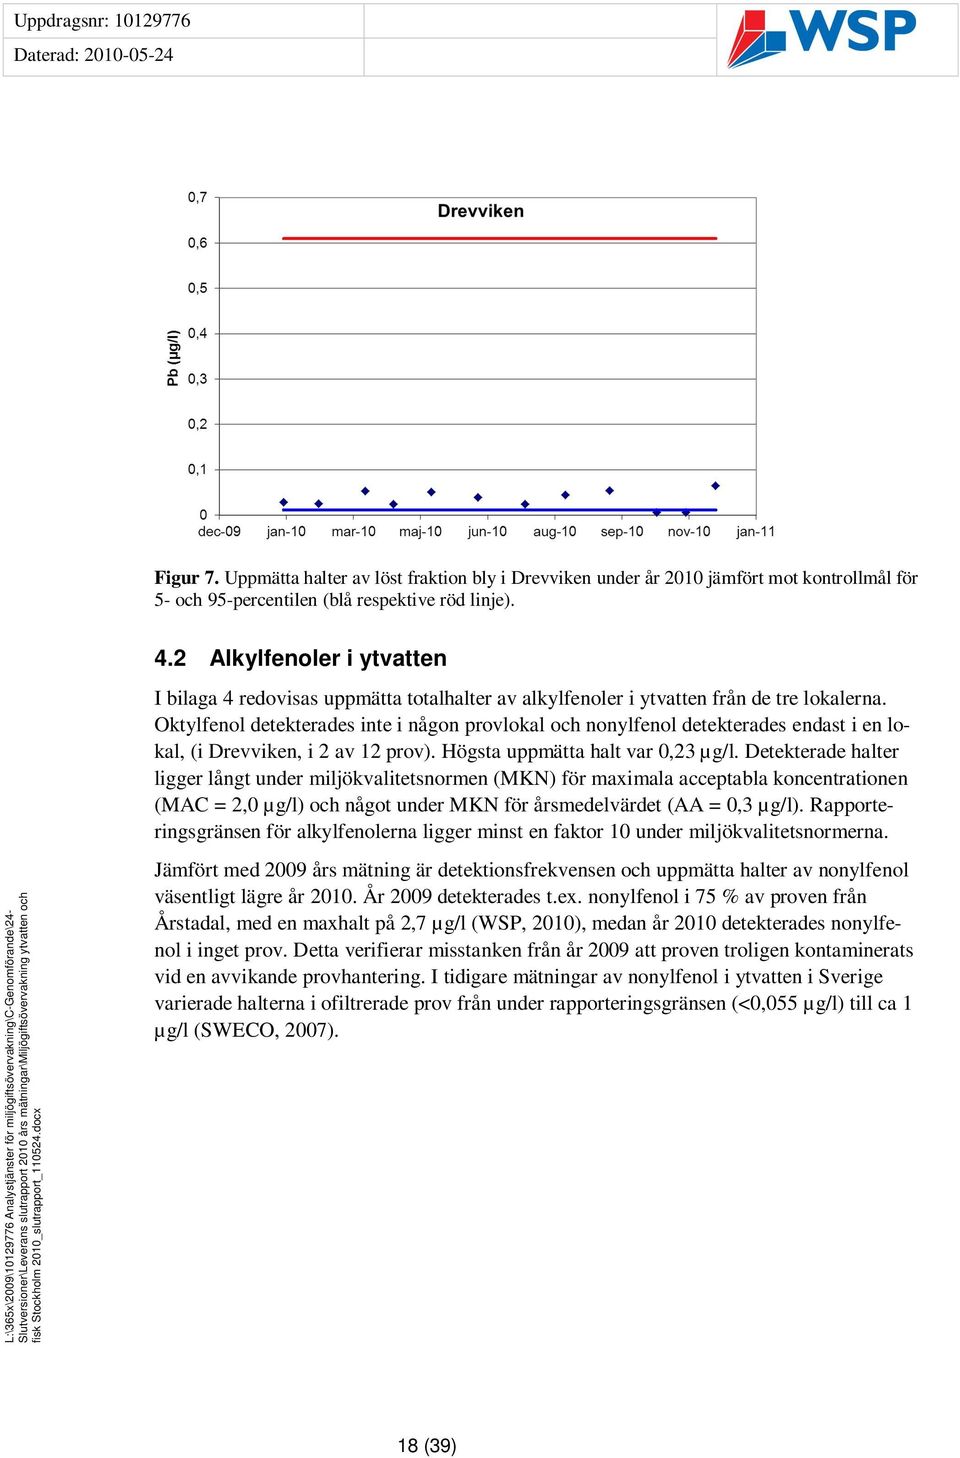 Oktylfenol detekterades inte i någon provlokal och nonylfenol detekterades endast i en lokal, (i Drevviken, i 2 av 12 prov). Högsta uppmätta halt var 0,23 µg/l.